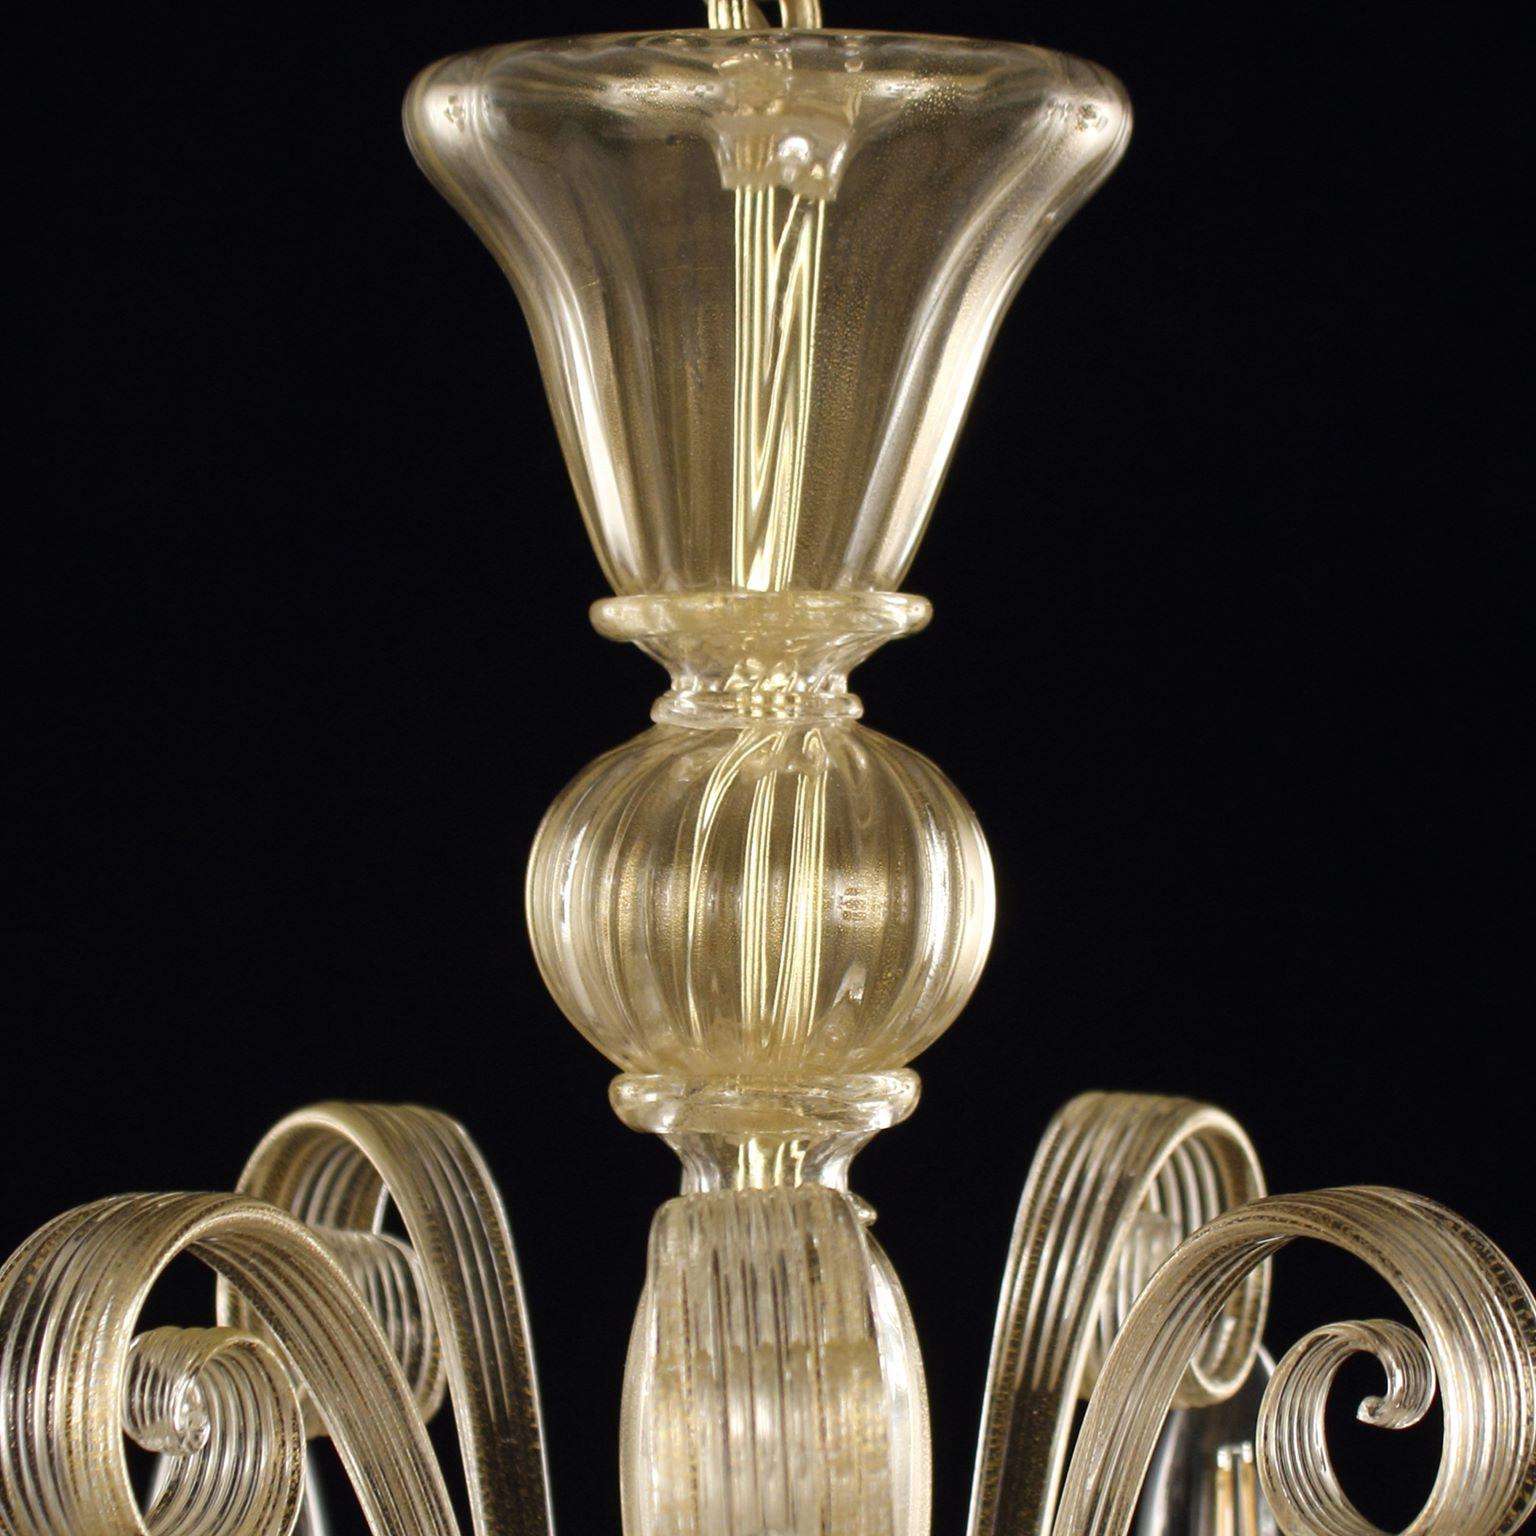 Capriccio Kronleuchter, 5-flammig, blattgoldenes Kunstglas, mit geschwungenen Ornamenten von Multiforme.
Es ist von der klassischen venezianischen Tradition inspiriert und zeichnet sich durch eine zentrale Säule aus, in der zahlreiche 